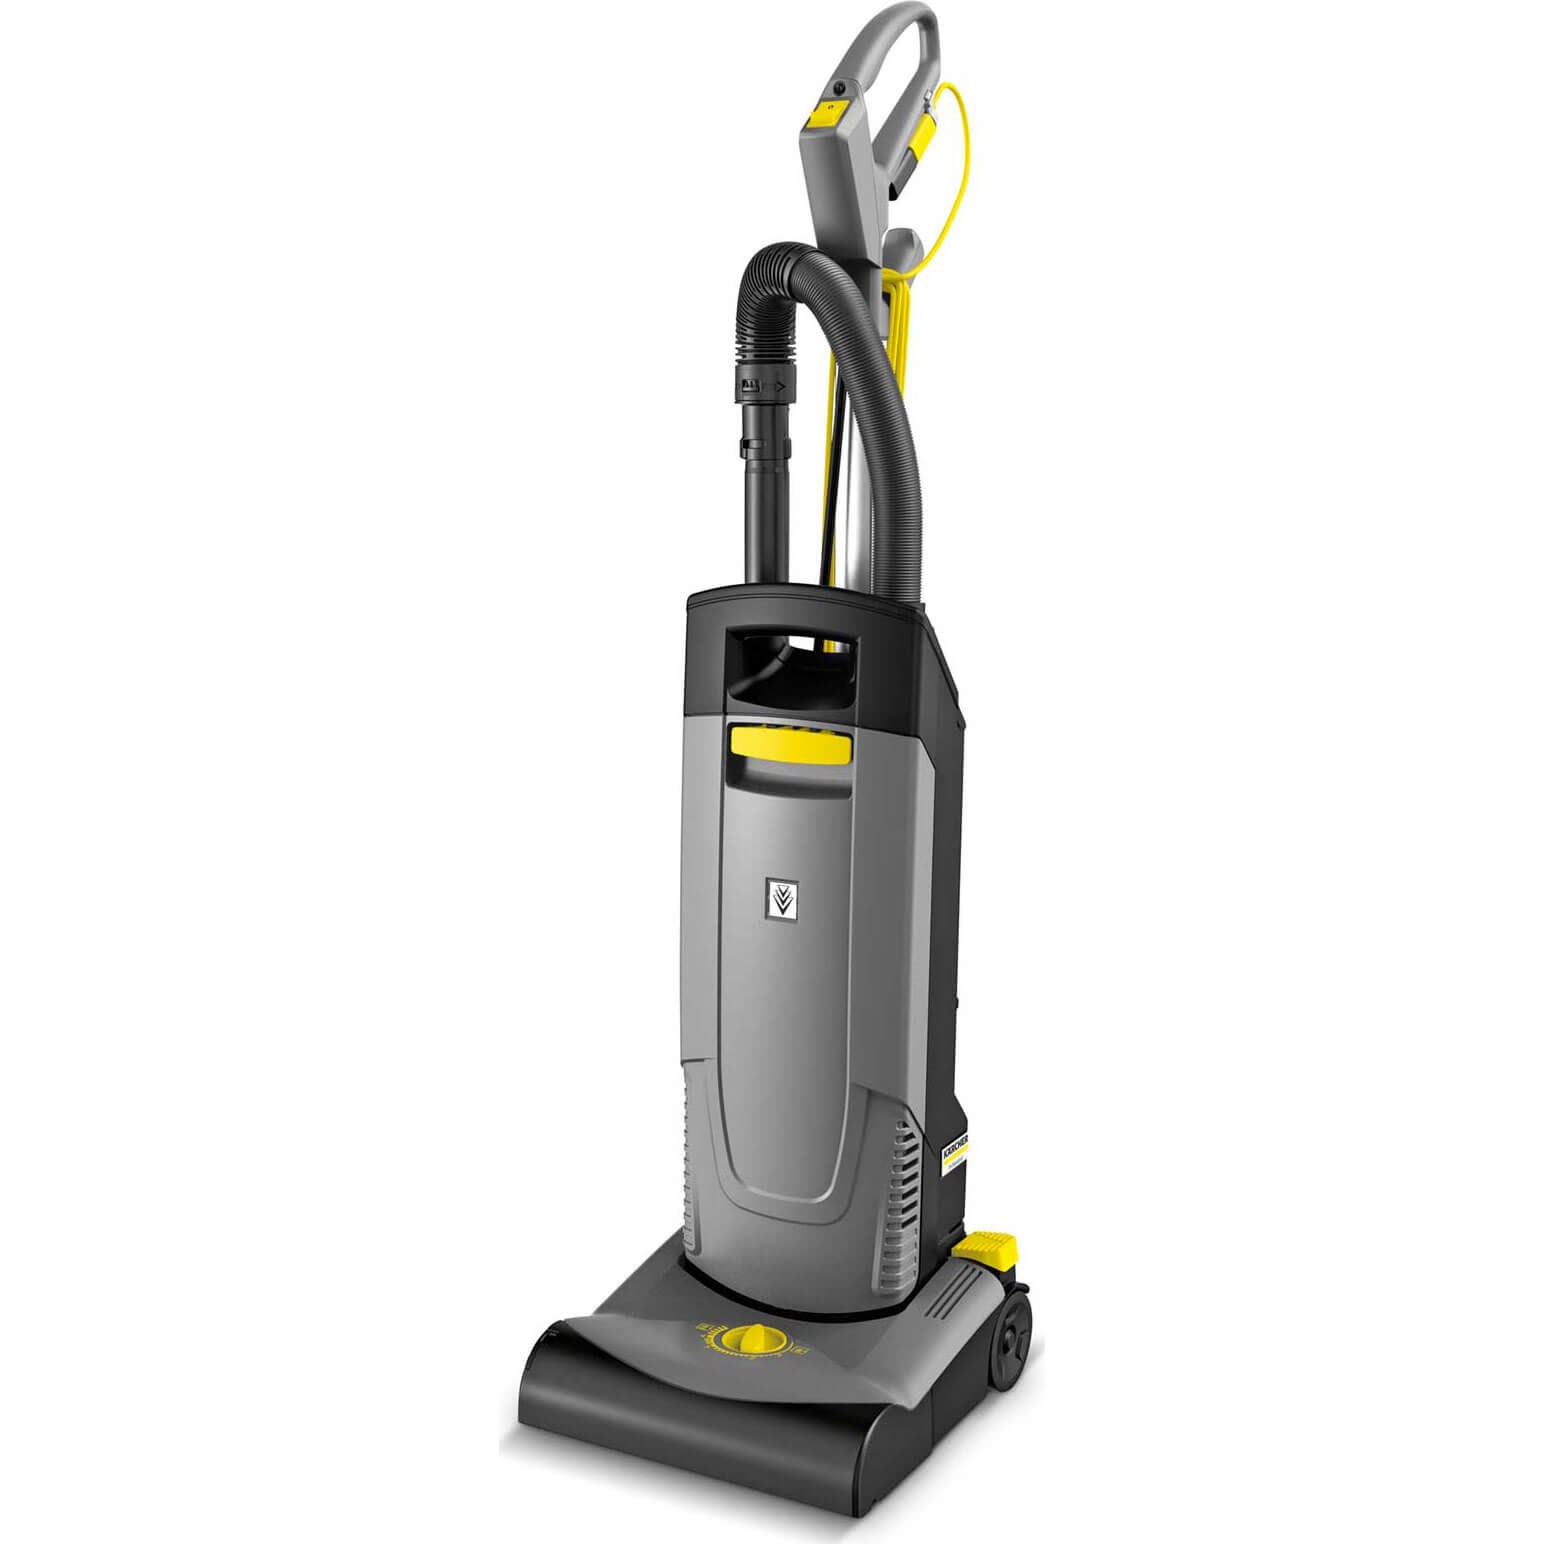 Karcher CV 30//1 Professional Upright Vacuum Cleaner New 2020 Model 240v